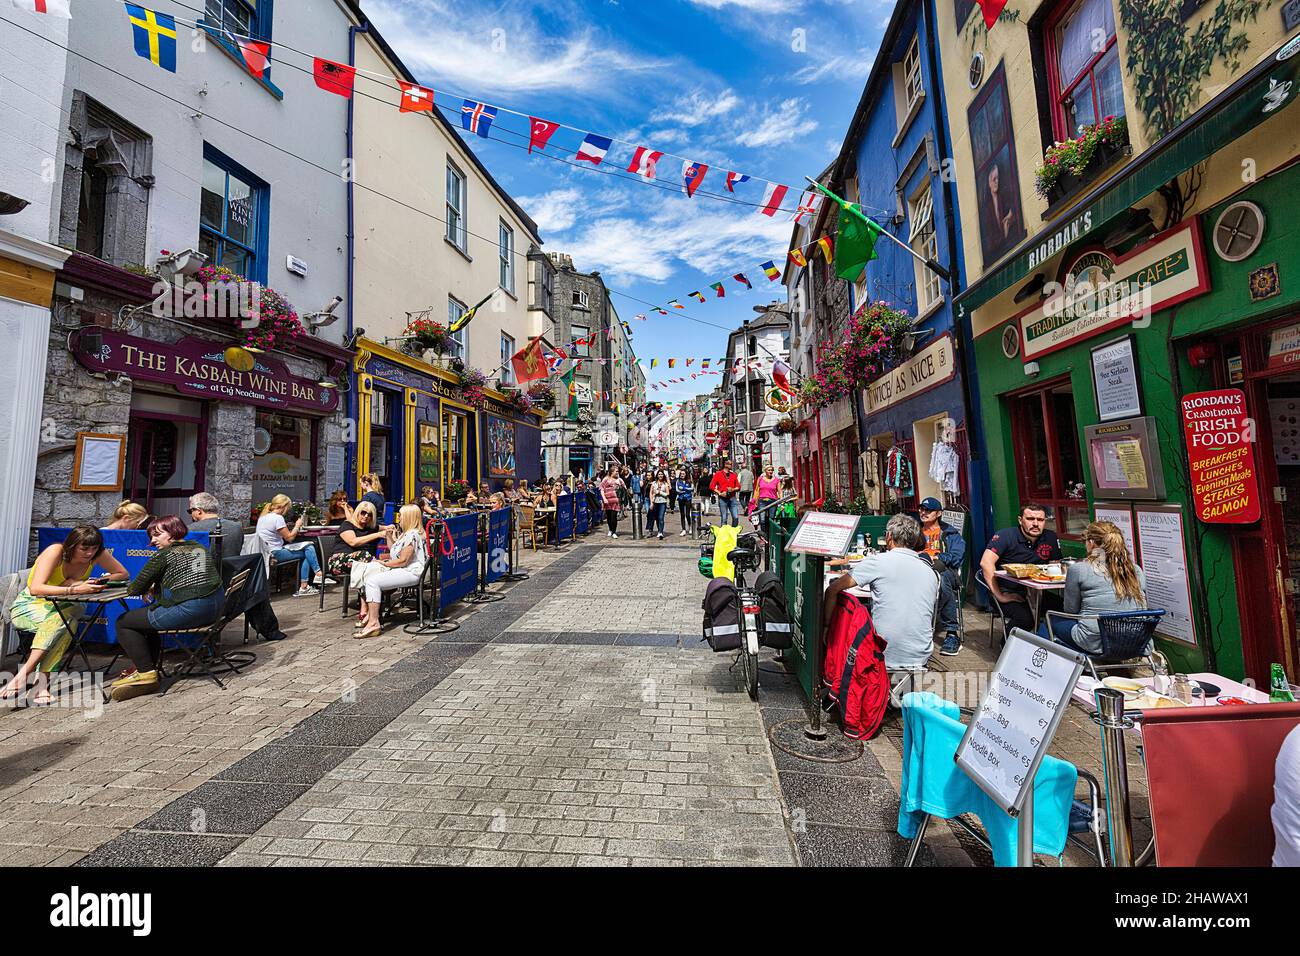 Vivace zona pedonale con caffè e ristoranti nel quartiere Latino, Galway, Irlanda Foto Stock